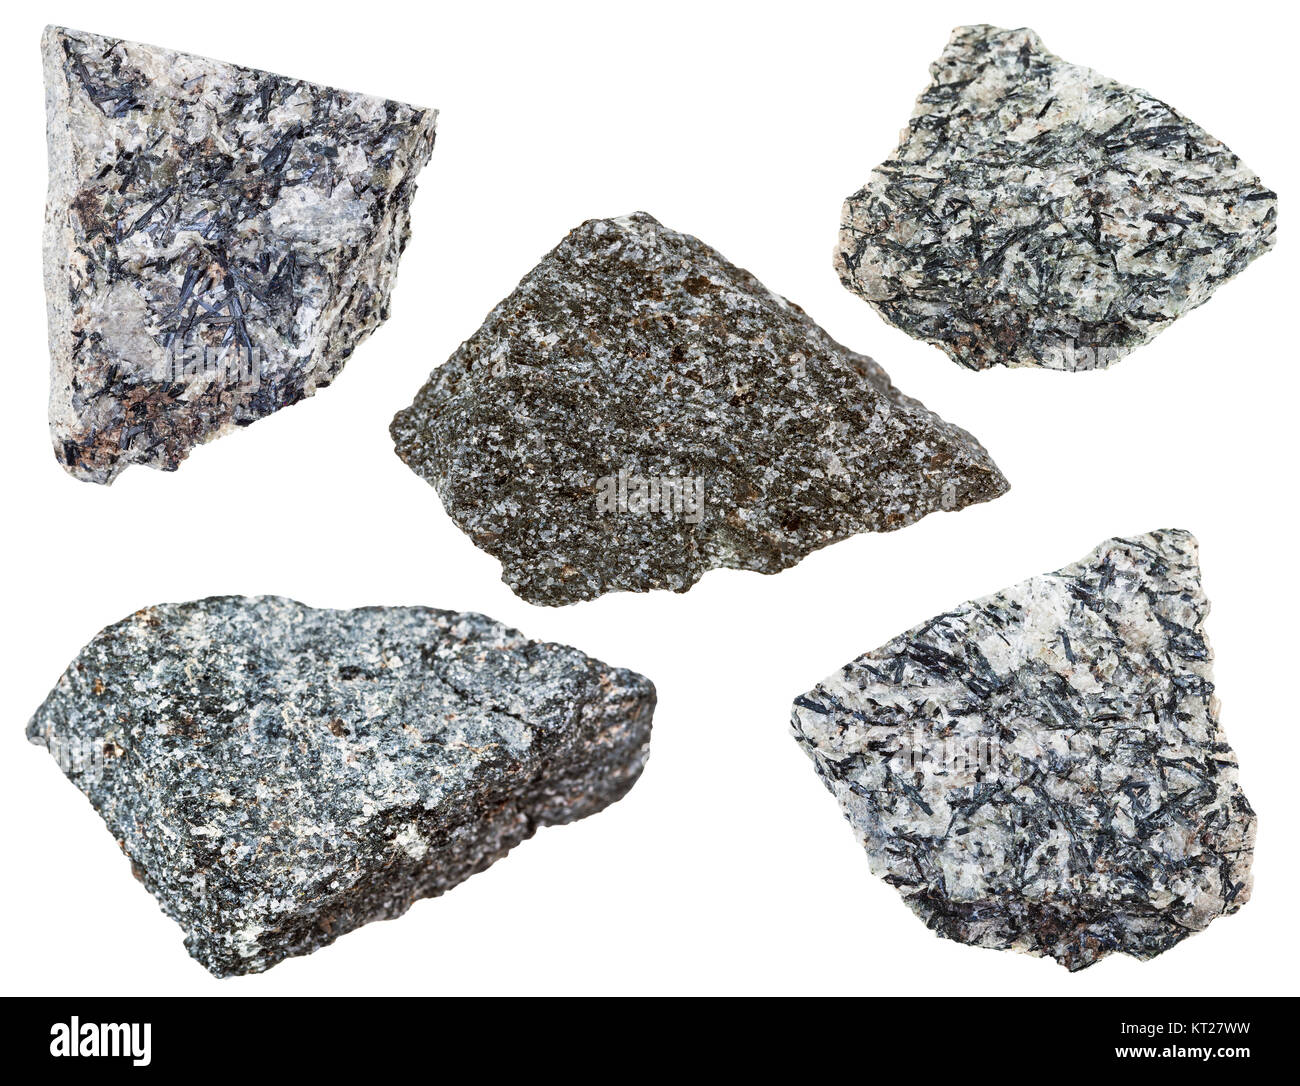 Sammlung von verschiedenen Nephelinsyenit mineralische Stein Stockfoto